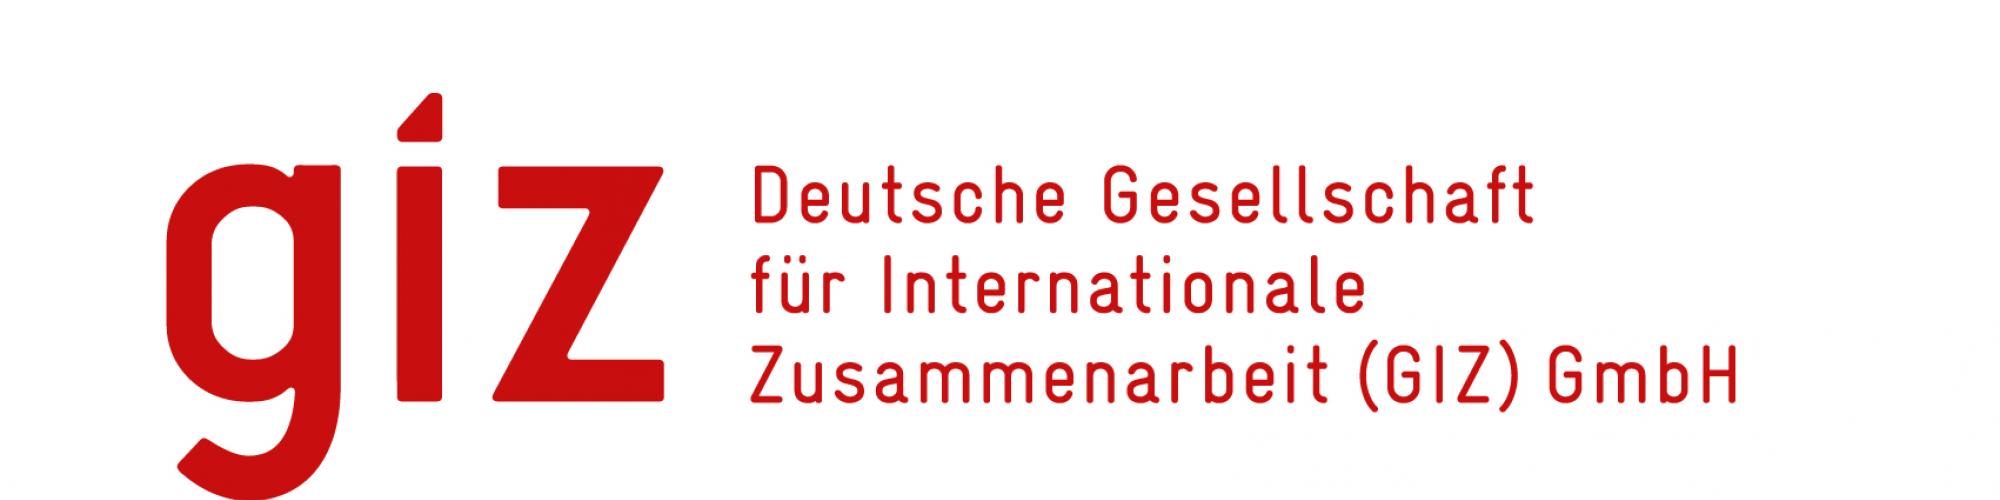 Deutsche Gesellschaft für Internationale Zusammenarbeit (GiZ) GmbH